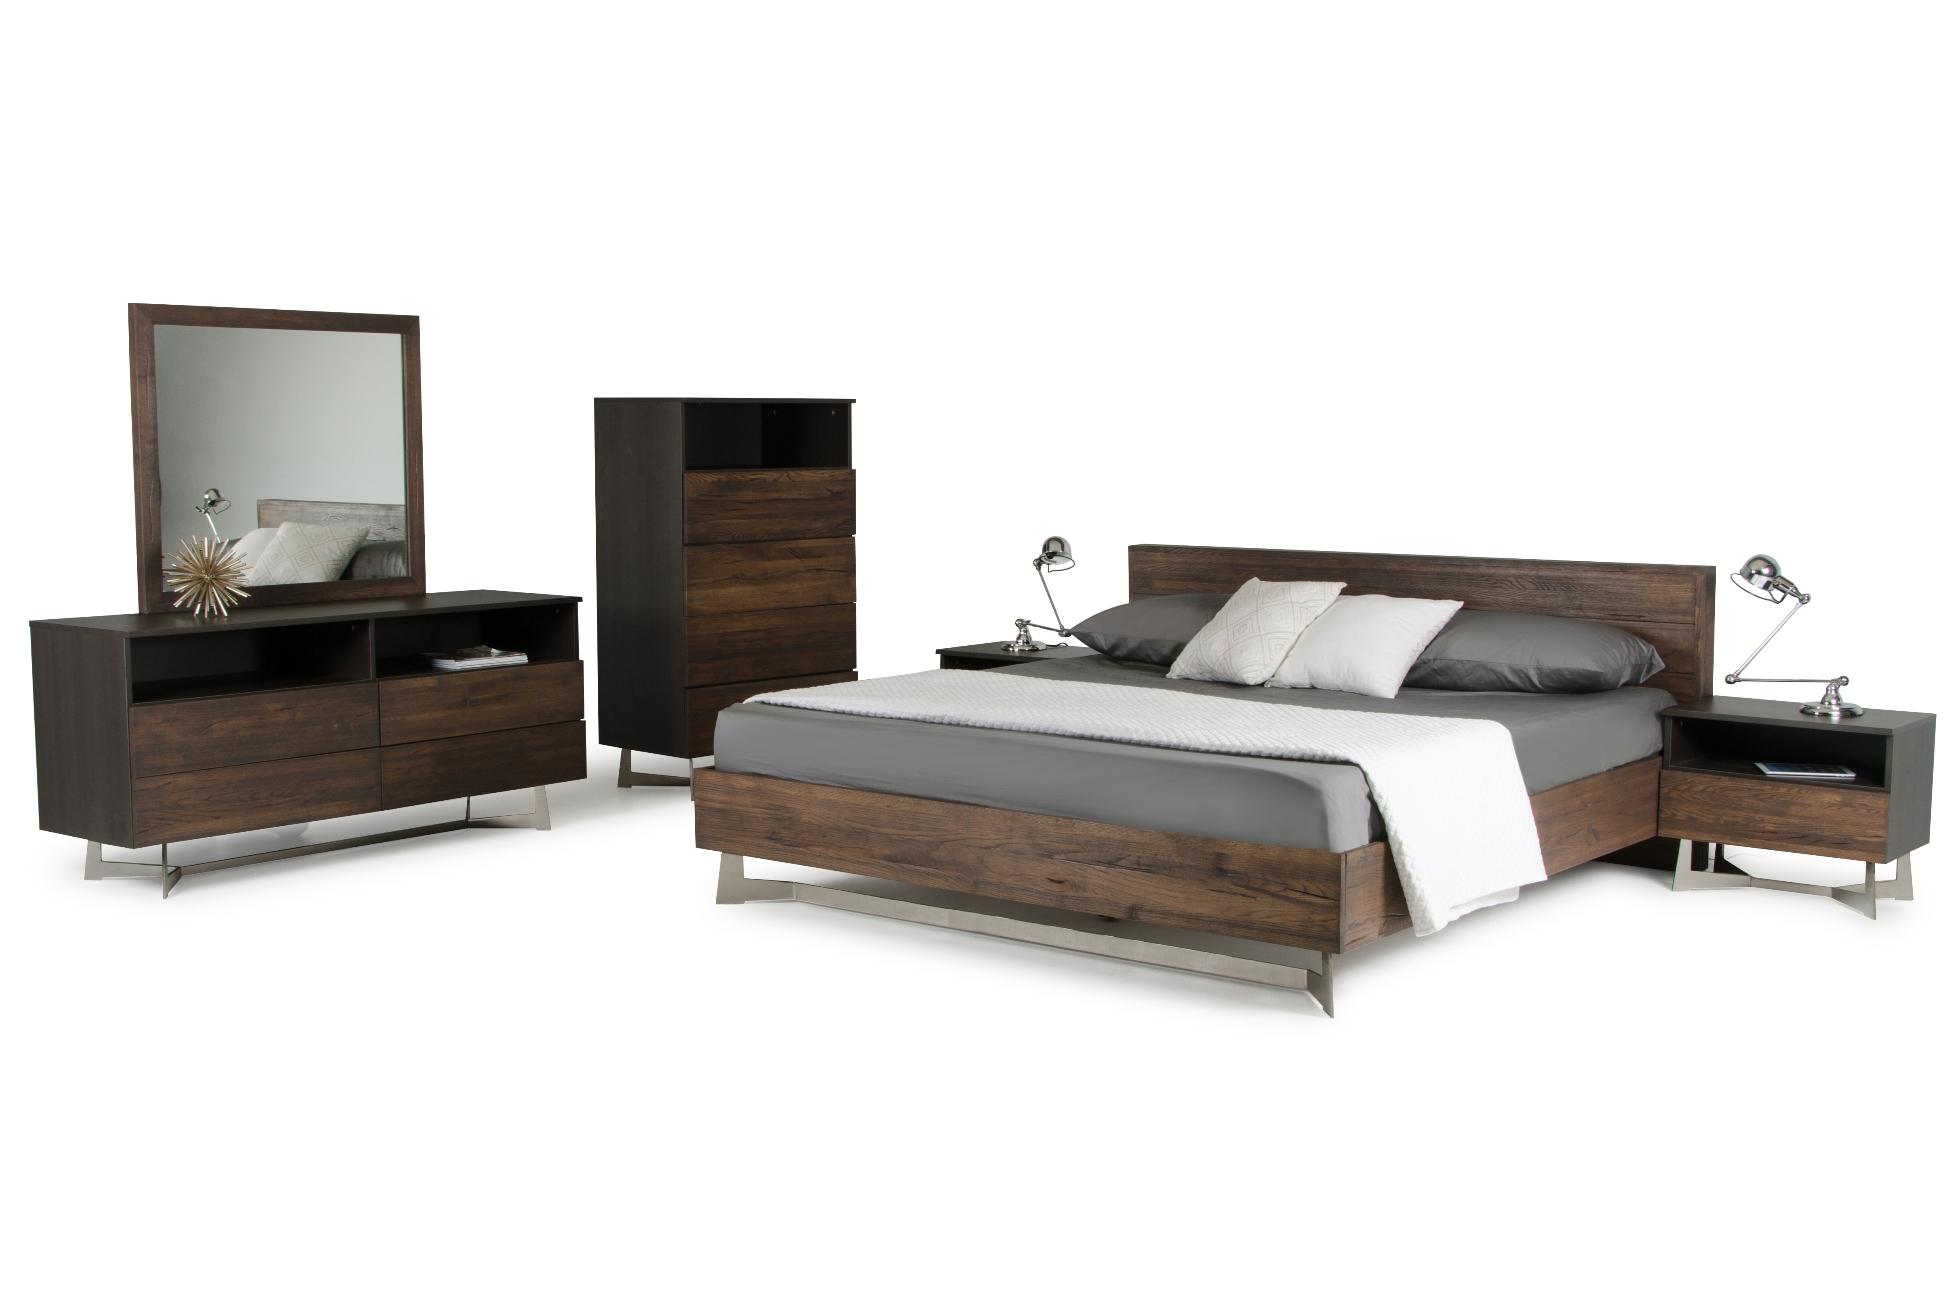 

    
VGEDWHARTON-BED-EK VIG Furniture Platform Bed
